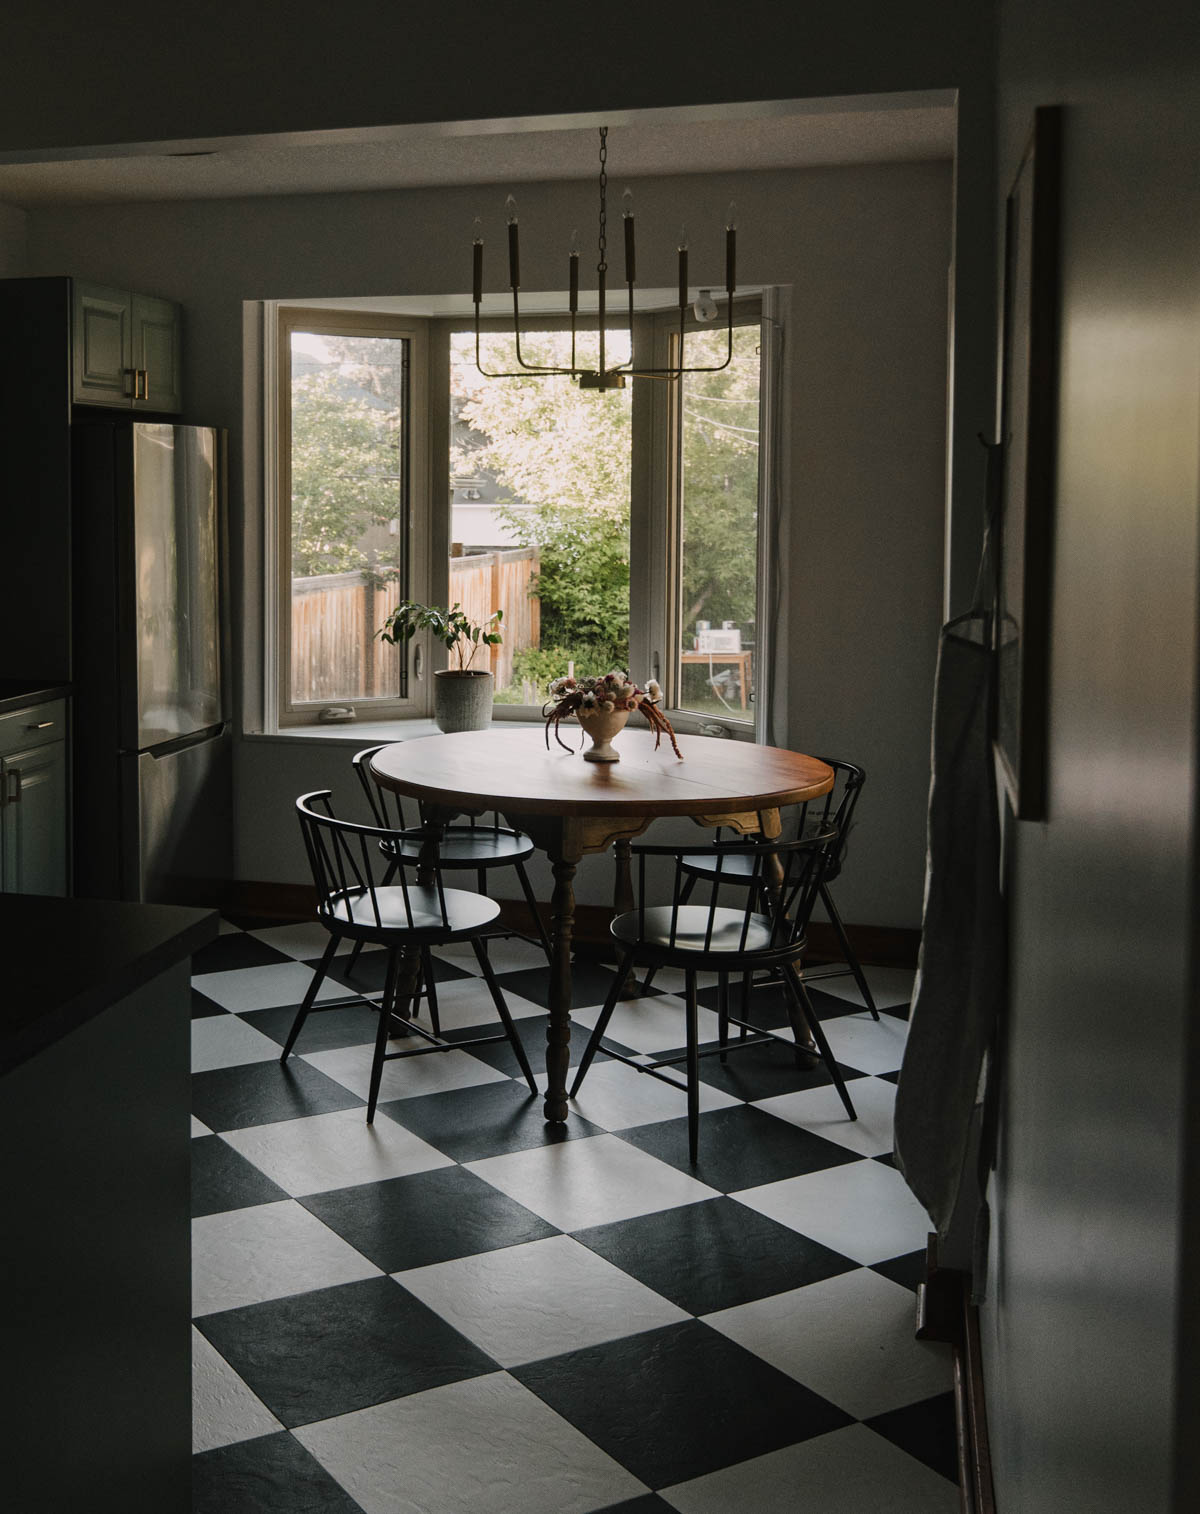 Checkerboard floor in a blue kitchen